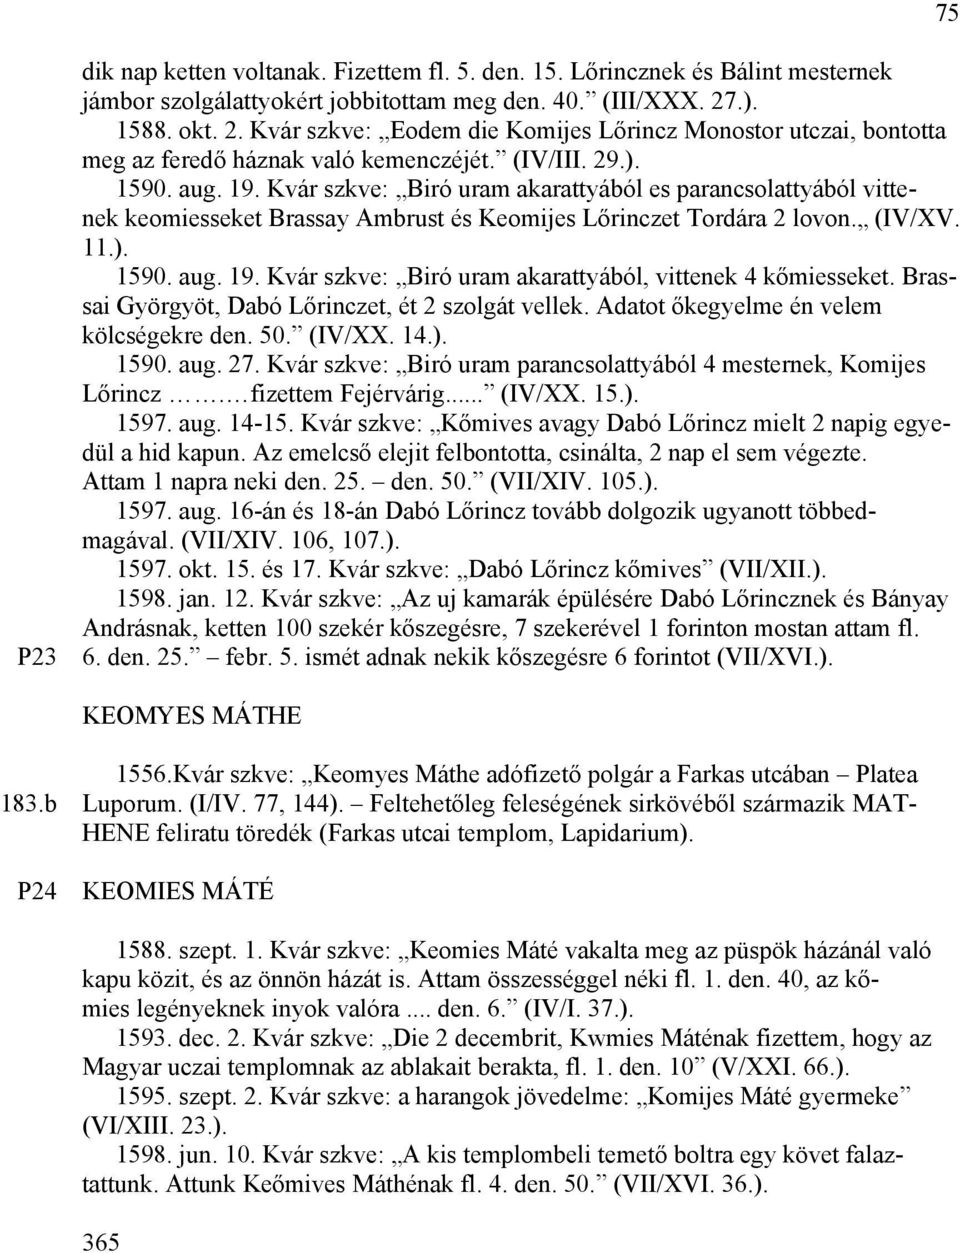 Kvár szkve: Biró uram akarattyából es parancsolattyából vittenek keomiesseket Brassay Ambrust és Keomijes Lőrinczet Tordára 2 lovon. (IV/XV. 11.). 1590. aug. 19.